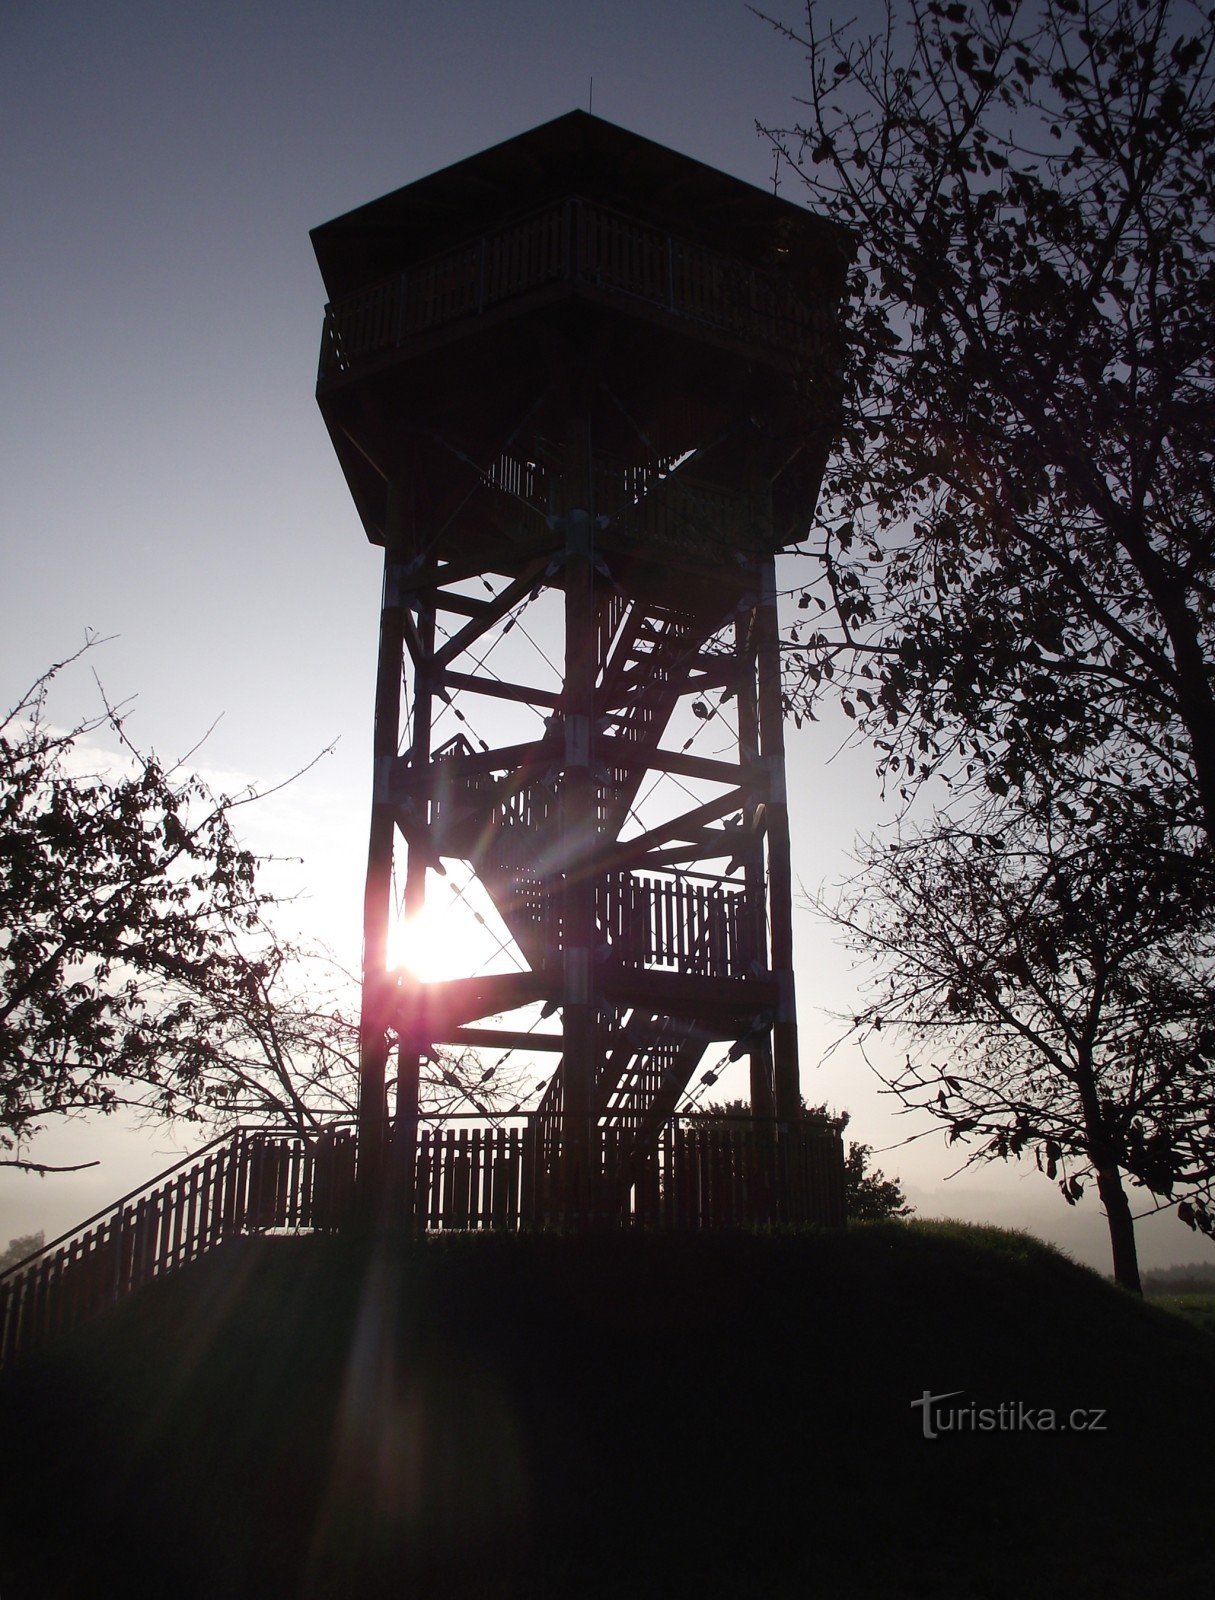 Žernovník morning lookout tower